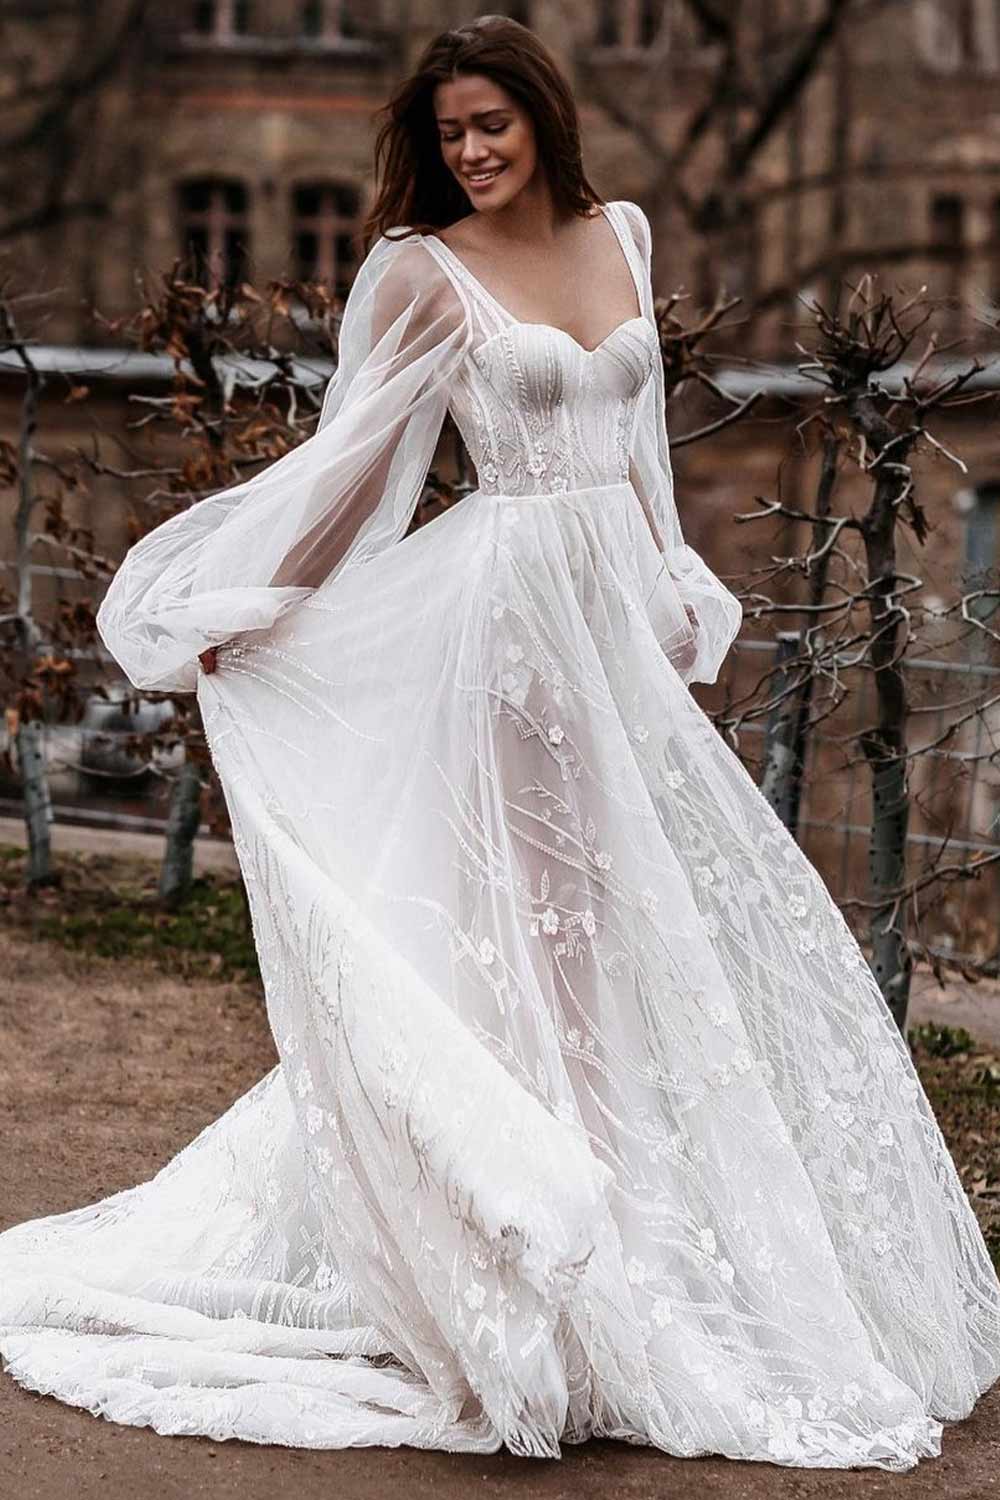 Corset Wedding Dress with Long Bishop Sleeves